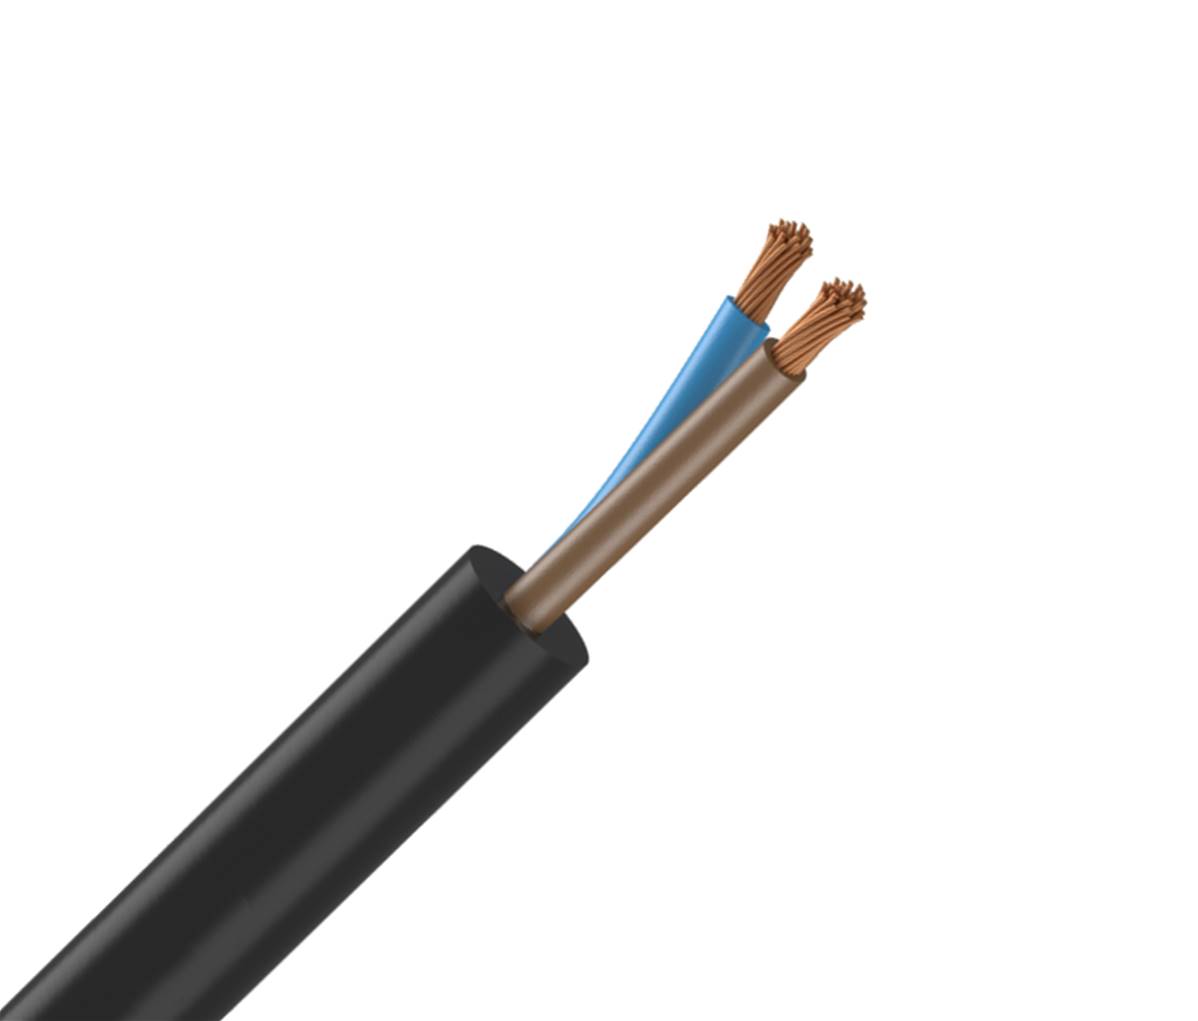 Câble gainé pour chargeur de voiture électrique 32A, Diam.10 mm x